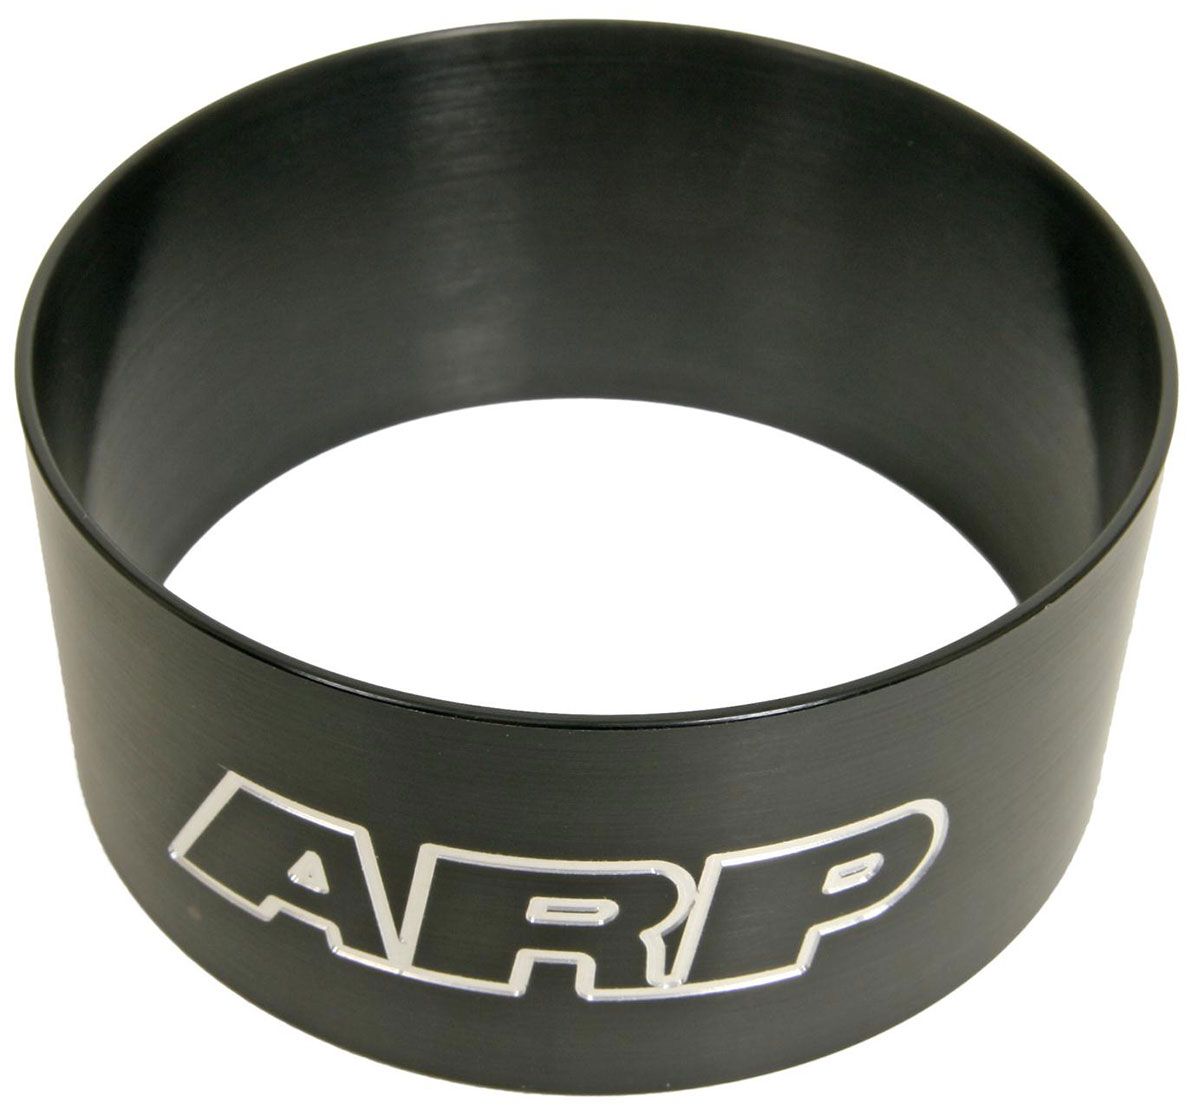 AR900-3900 - ARP RING COMPRESSOR 4.390